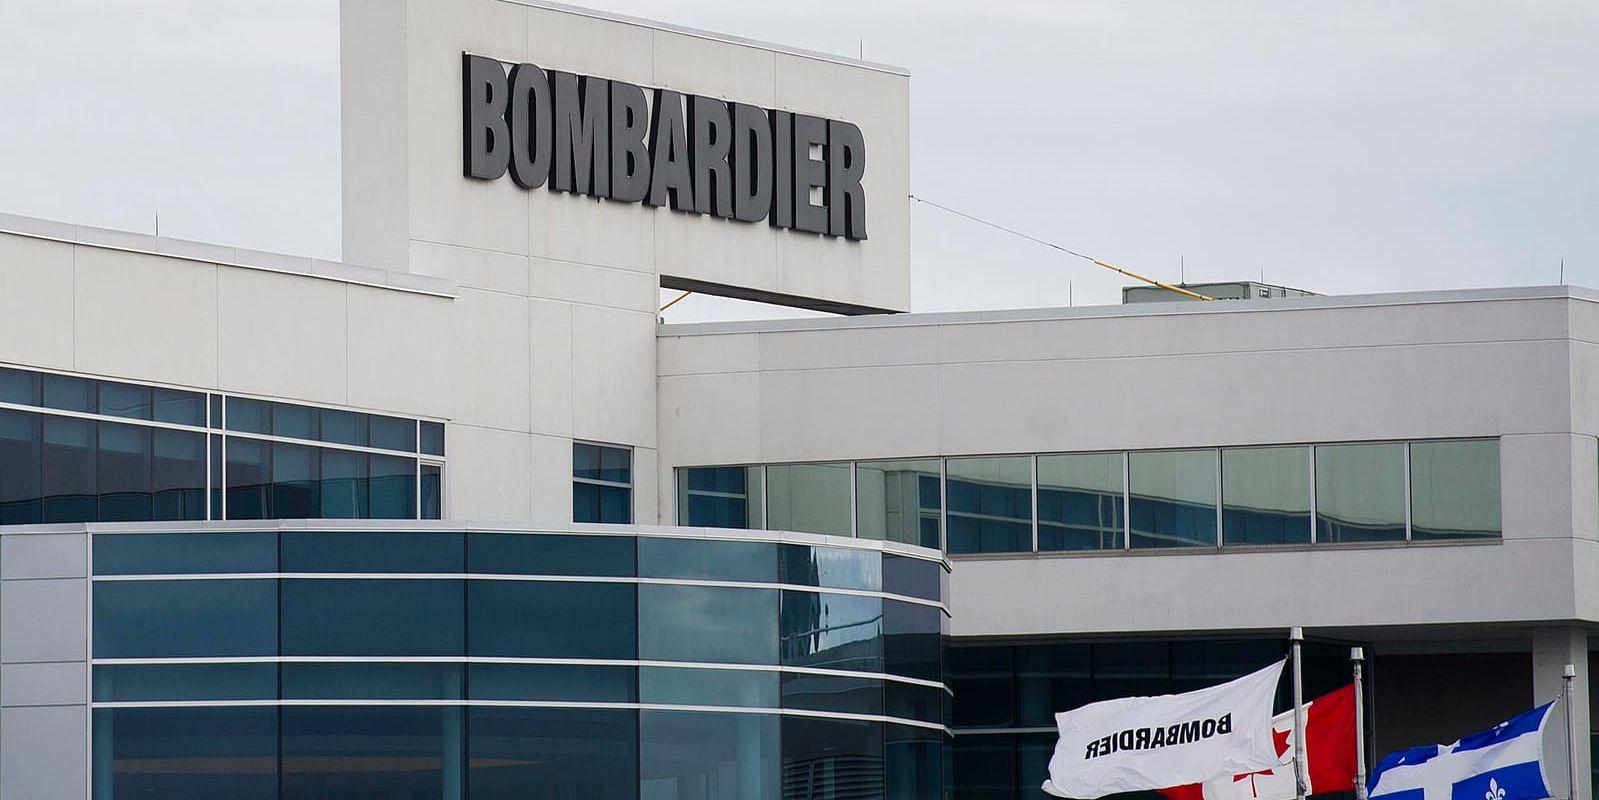 Världsbanken anklagar Bombardier för korruption och företaget riskerar sanktioner. Arkivbild.